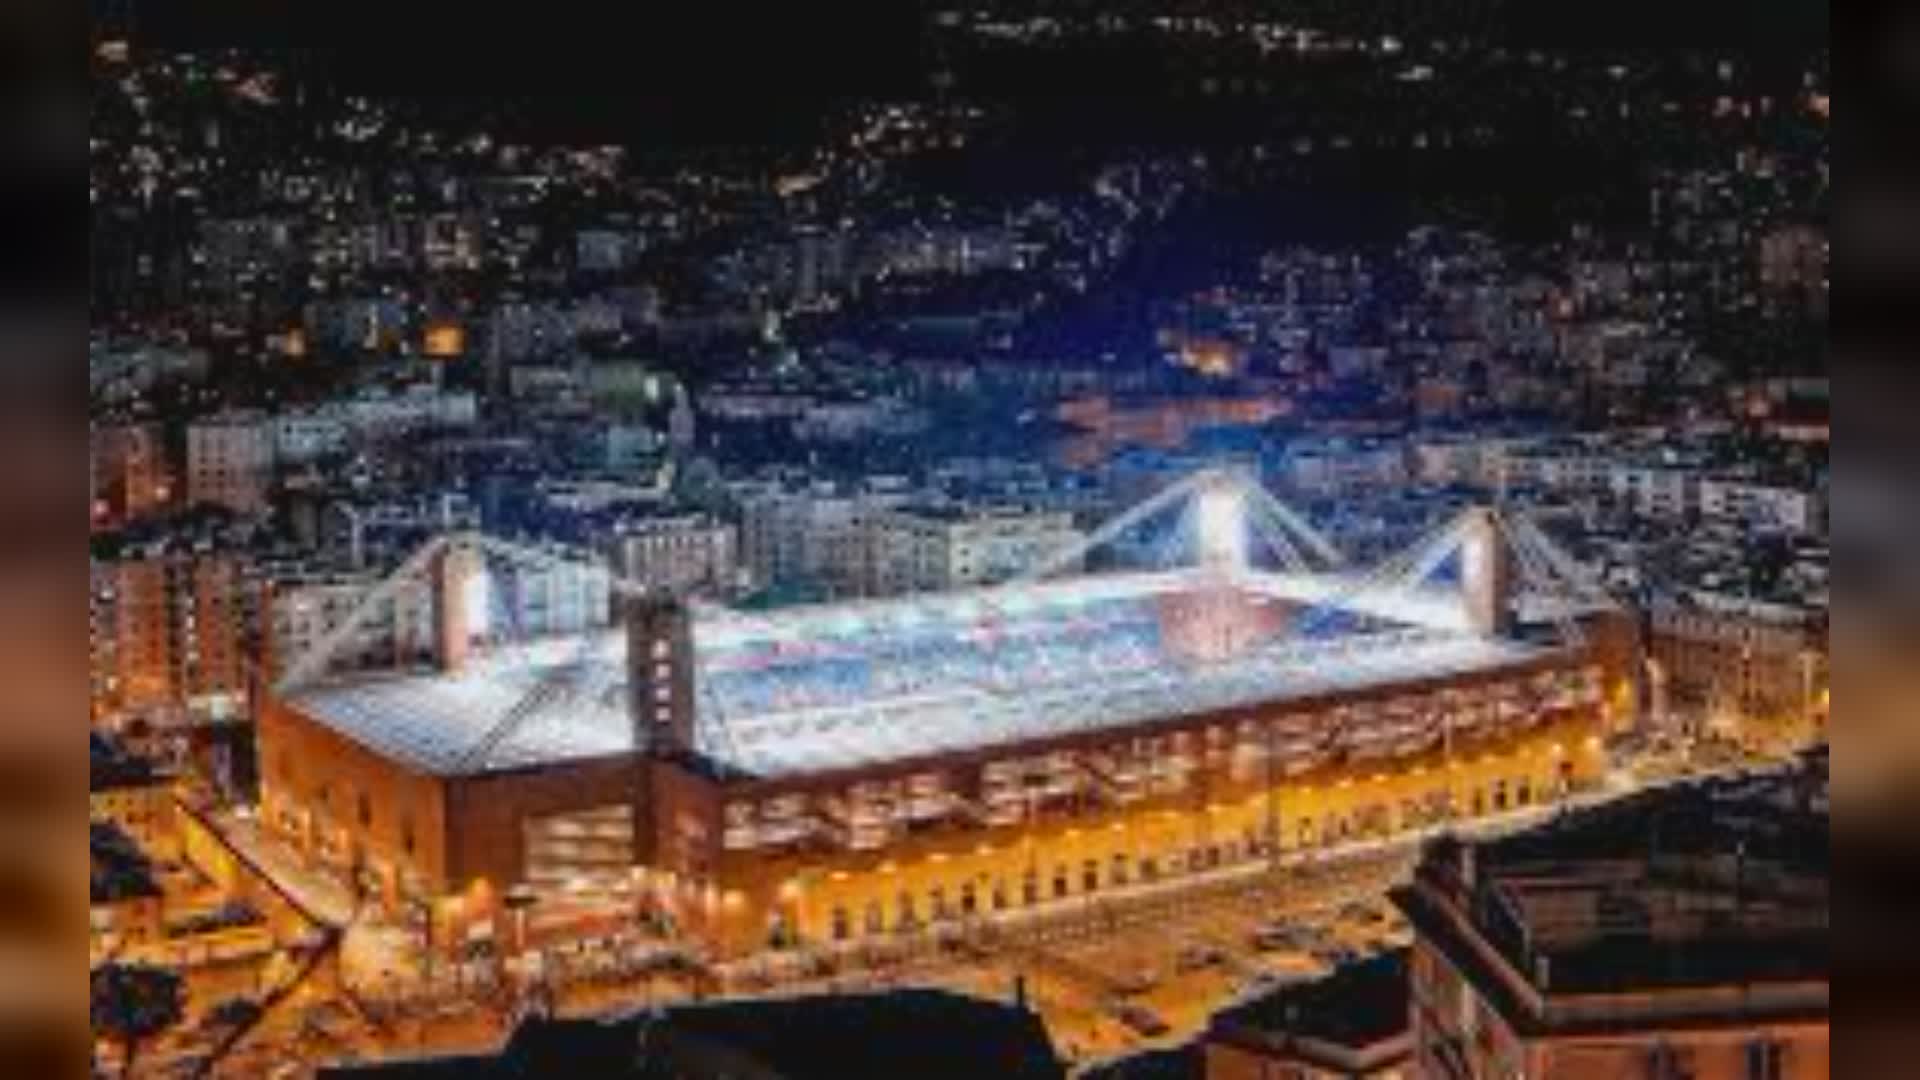 Sampdoria-Spezia, settore ospiti aperto solo ai possessori di tessera del tifoso